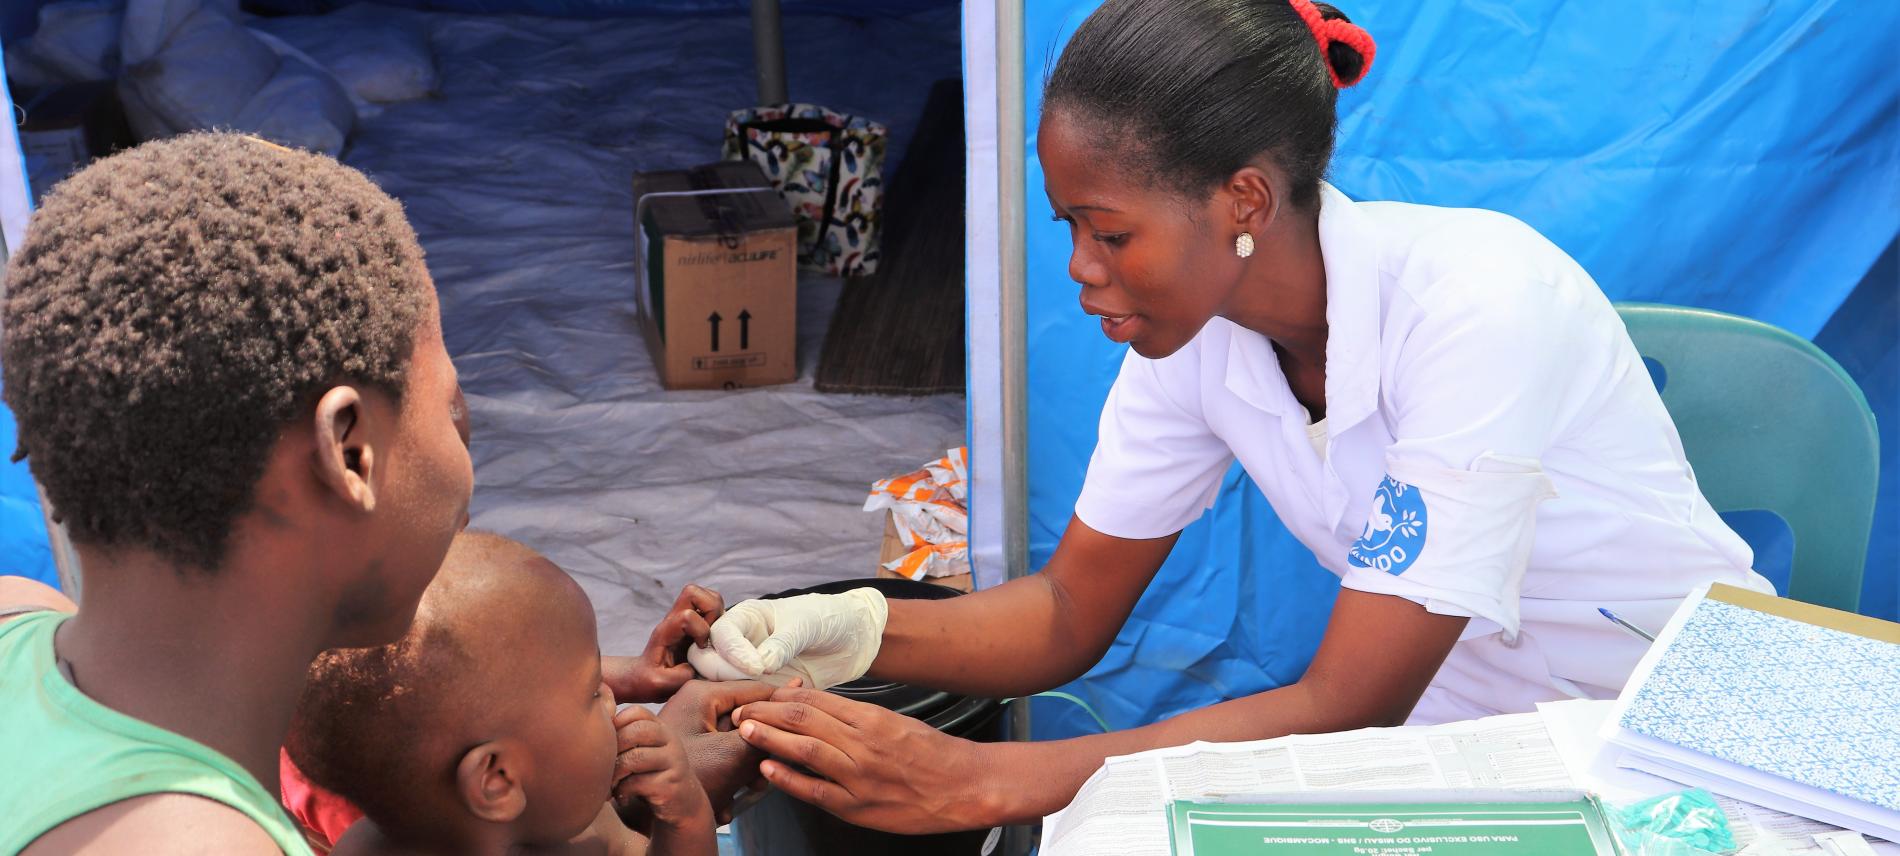 Eine Ärzte der Welt-Mitarbeiterin untersucht ein Kind in Mosambik. Foto: Ärzte der Welt